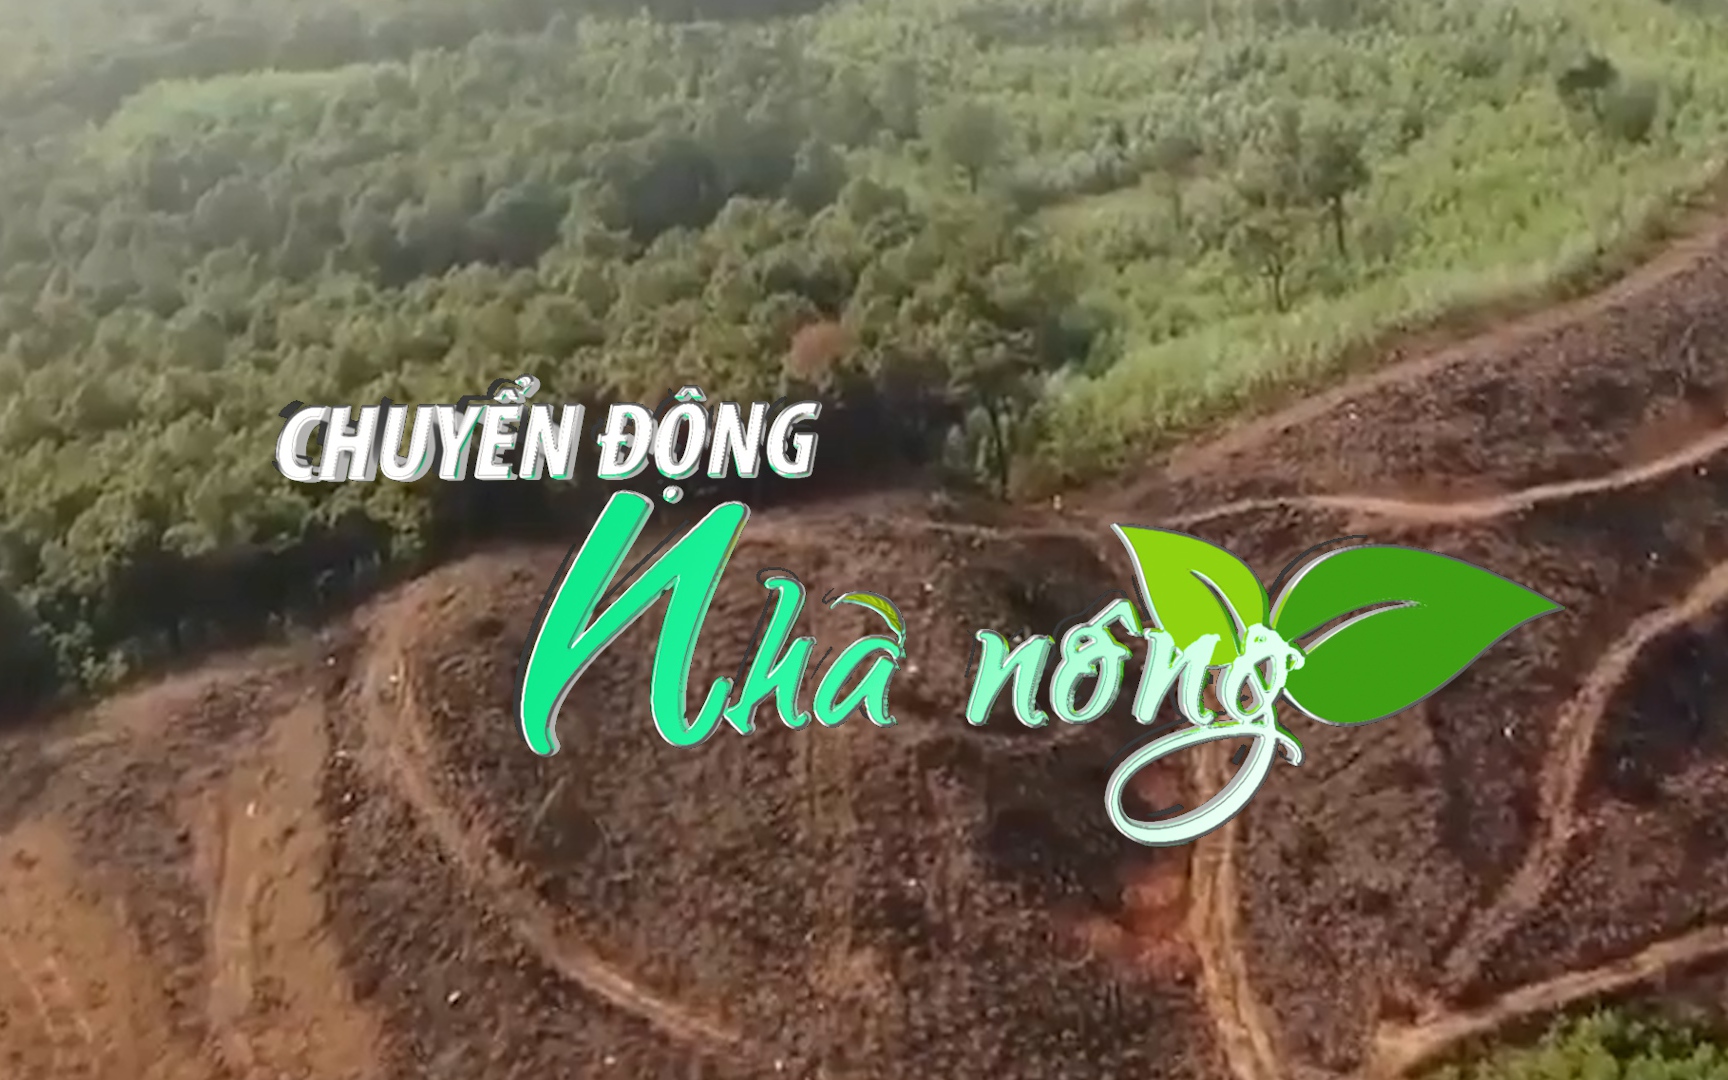 Chuyển động Nhà nông 14/3: Công an điều tra vụ chặt hạ hàng loạt cây thông lớn để trồng keo ở Nghệ An